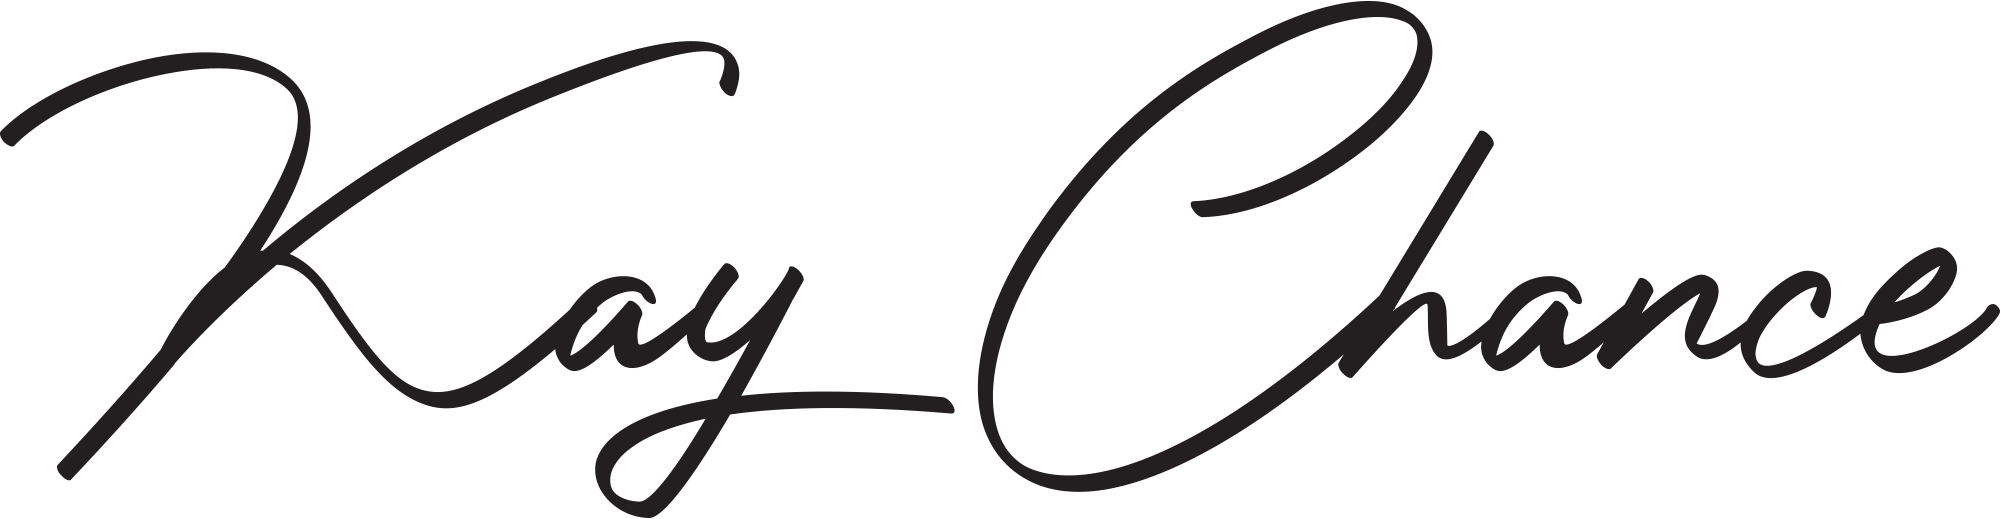 Kay Chance signature